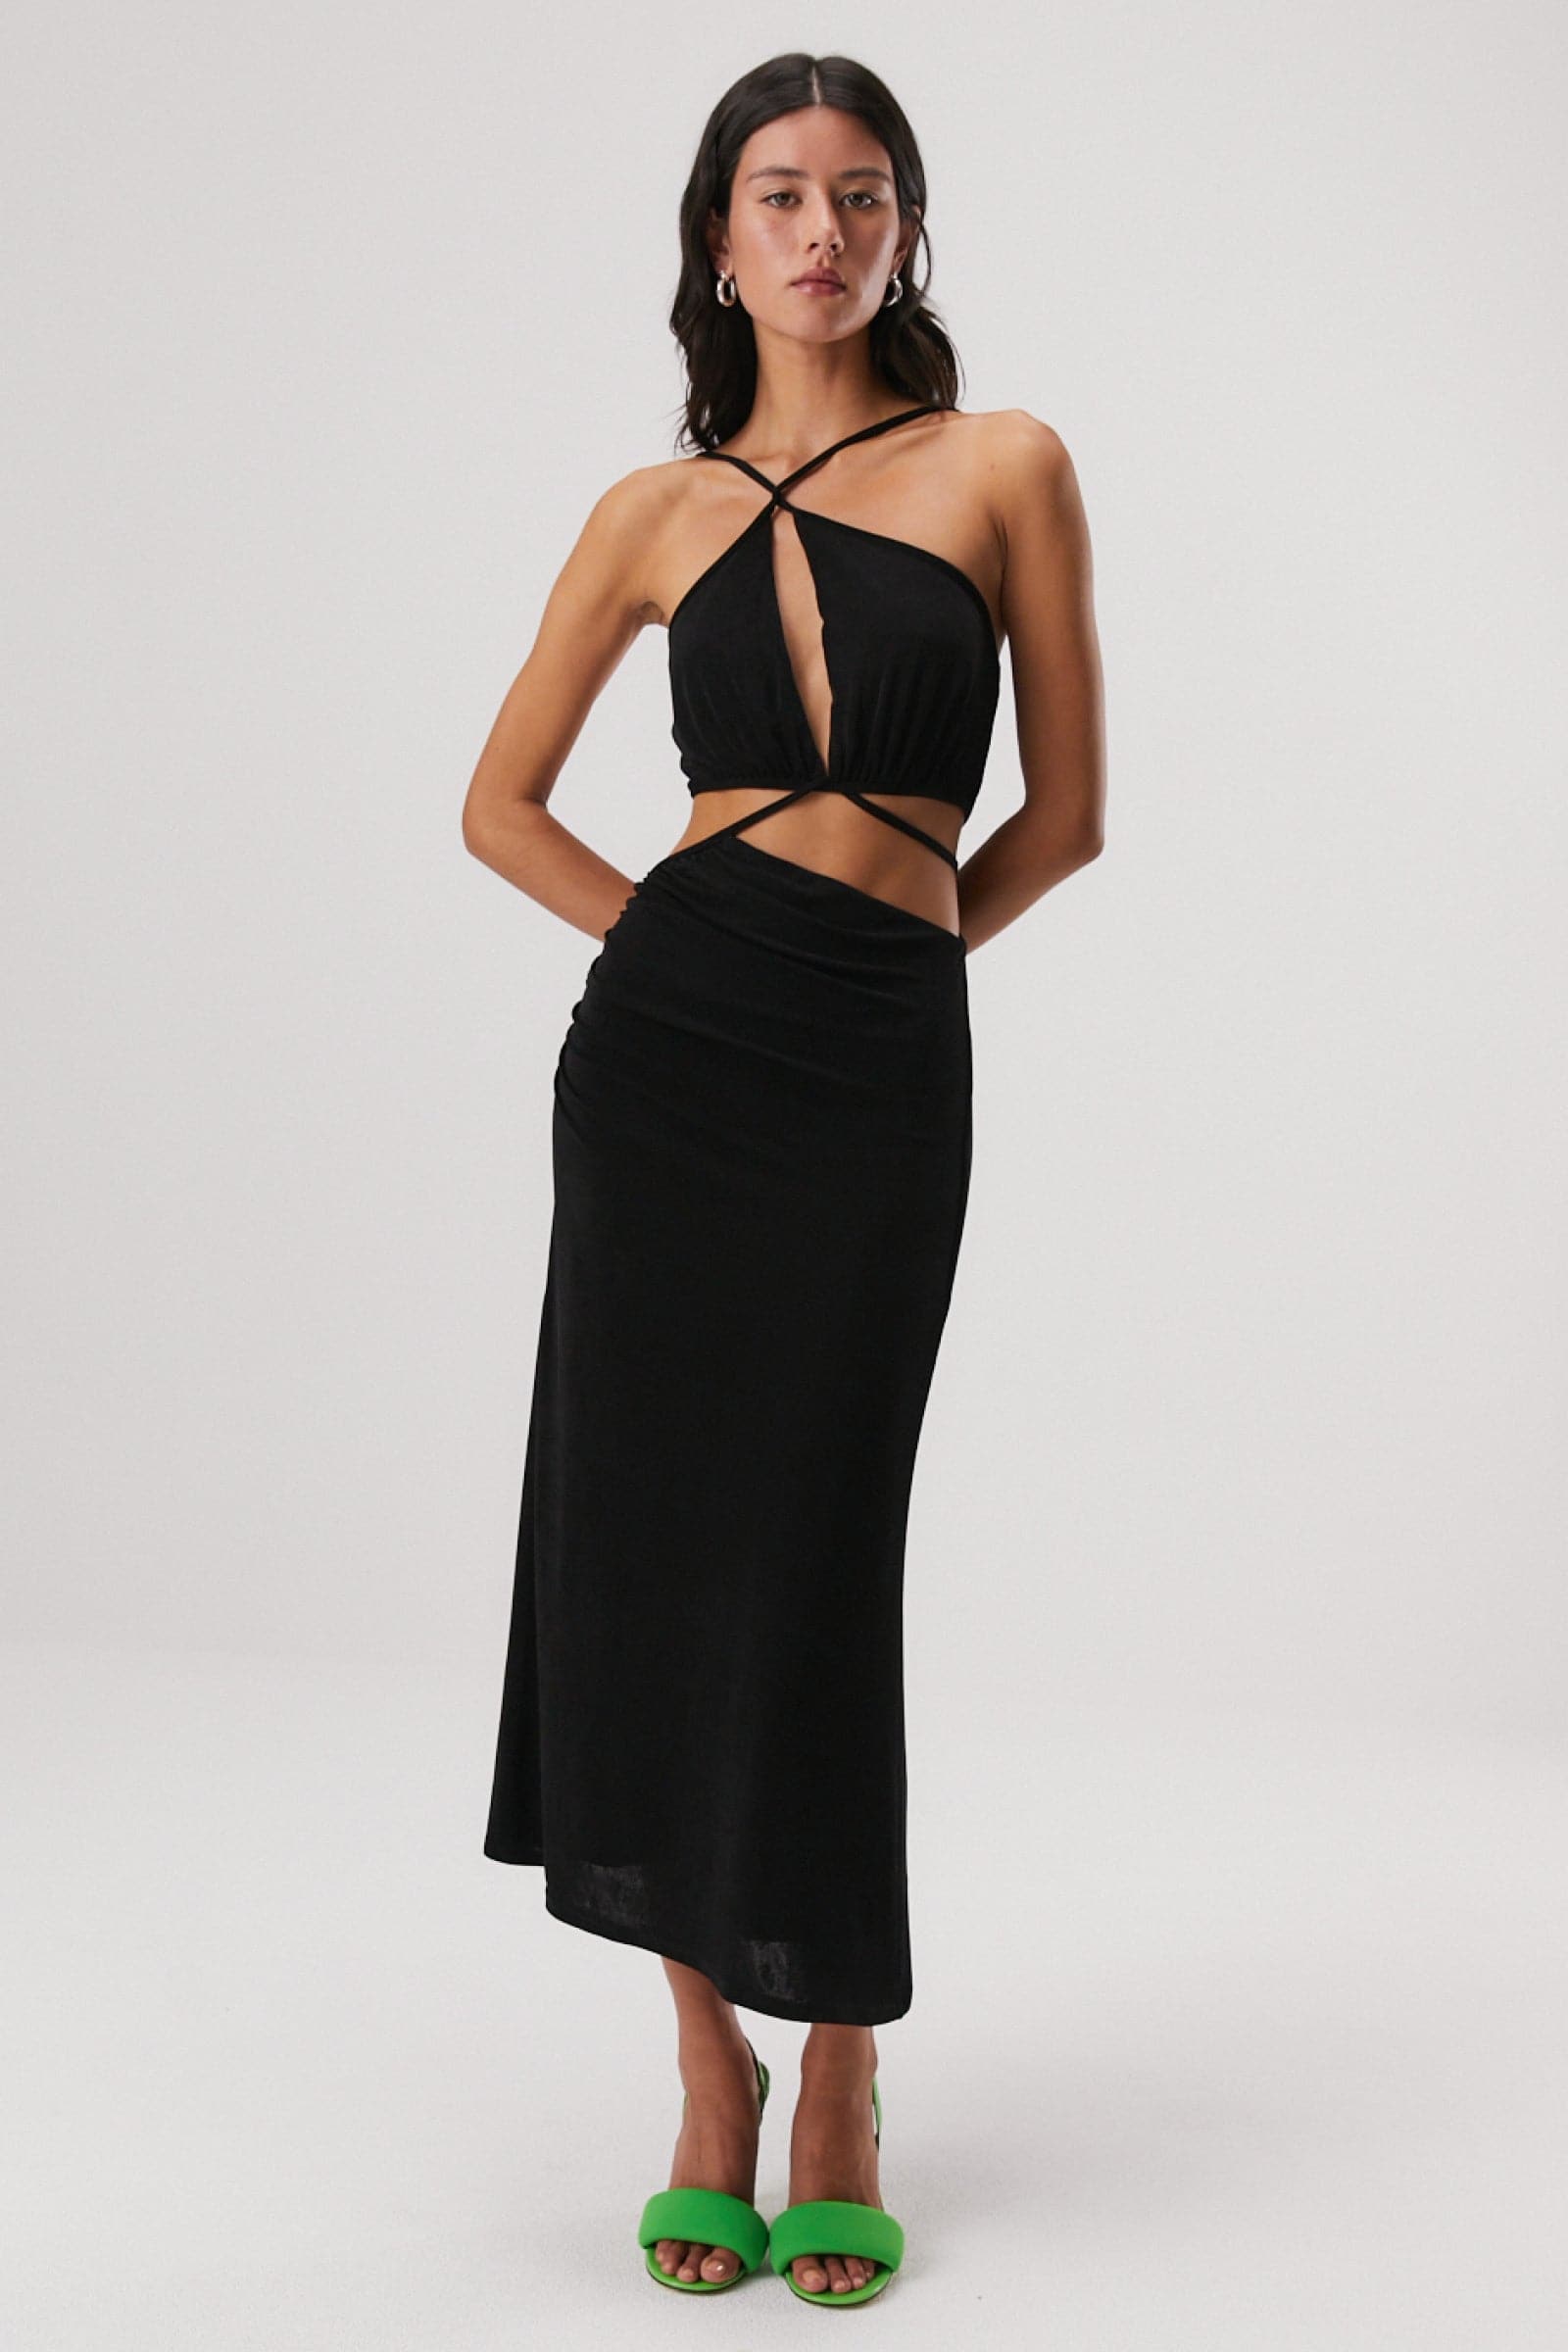 Women's Dresses online | Buy Designer Dresses Australia – MISHA